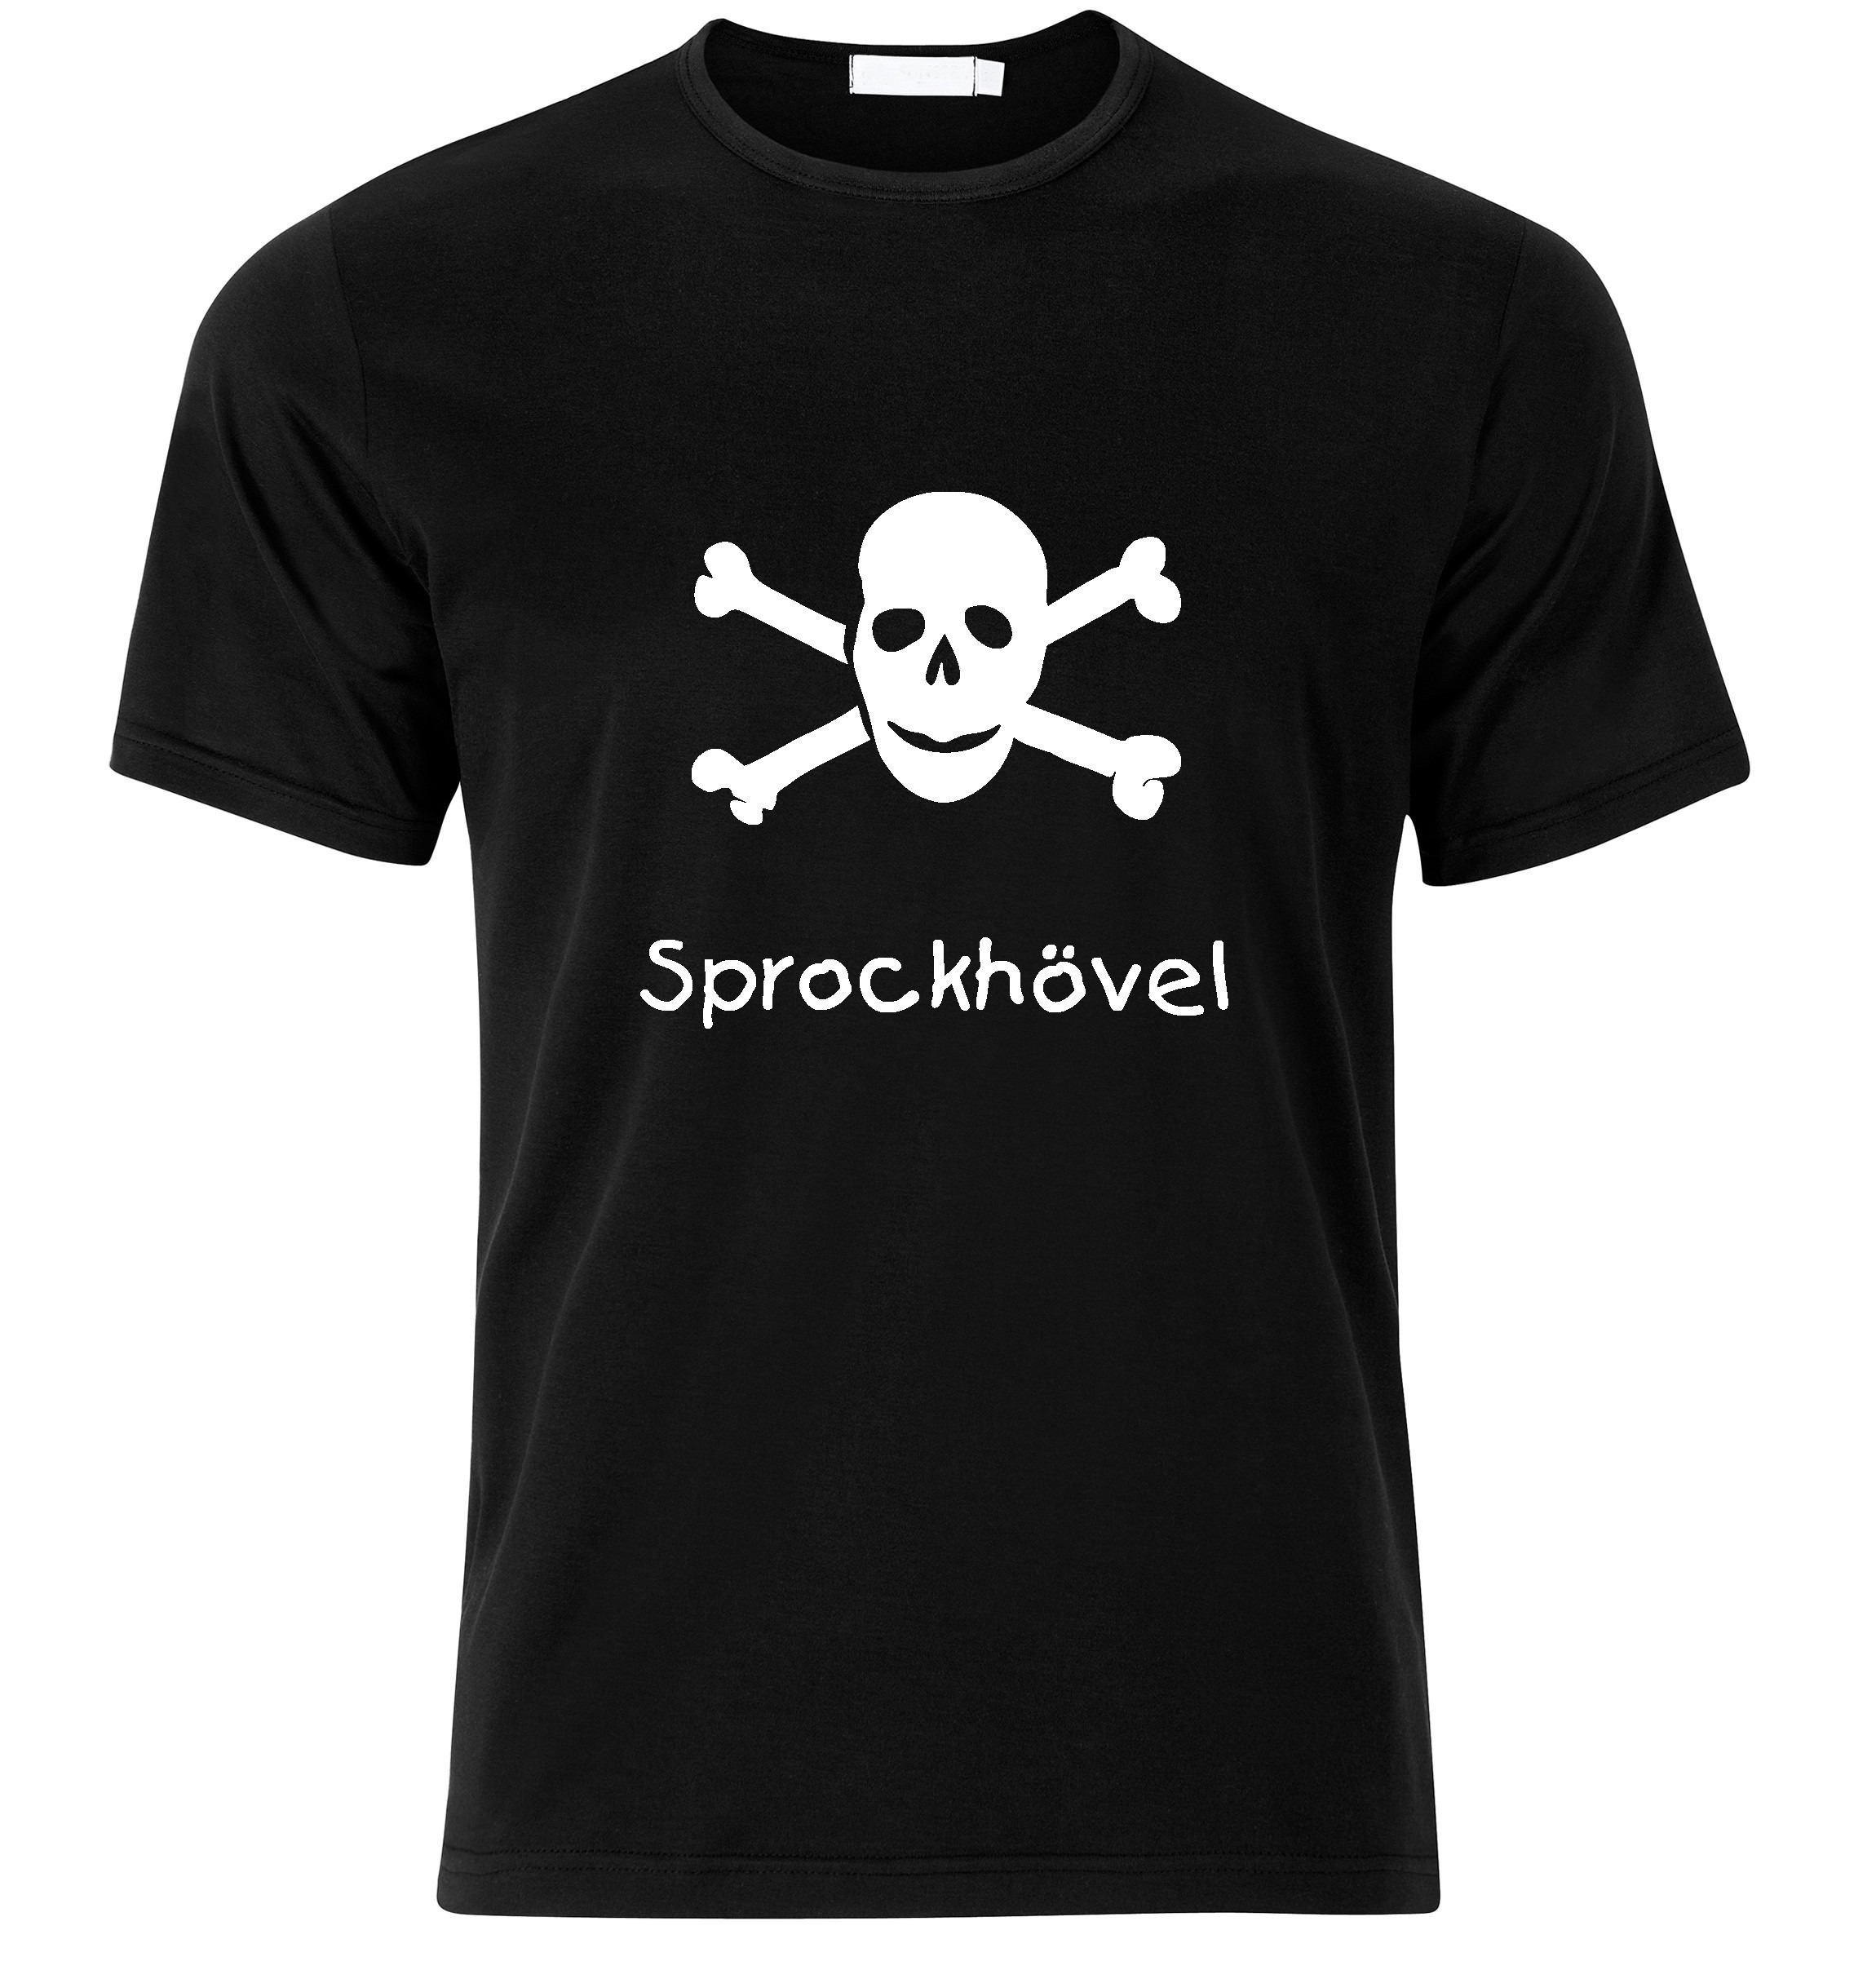 T-Shirt Sprockhövel Jolly Roger, Totenkopf